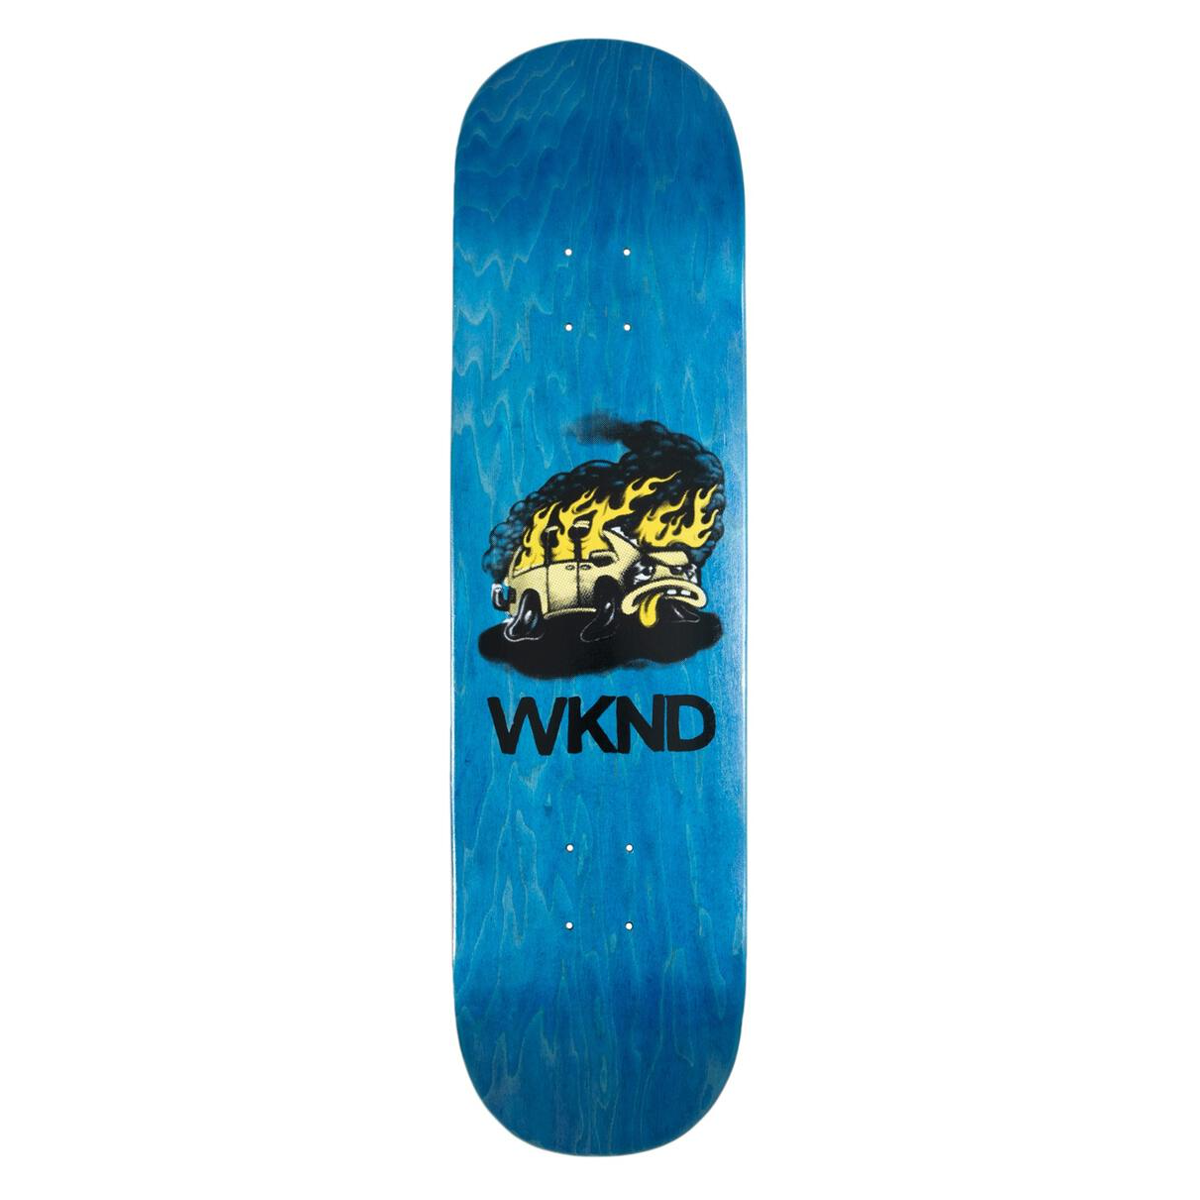 WKND "Van Down" Skate Deck - 8.0BP